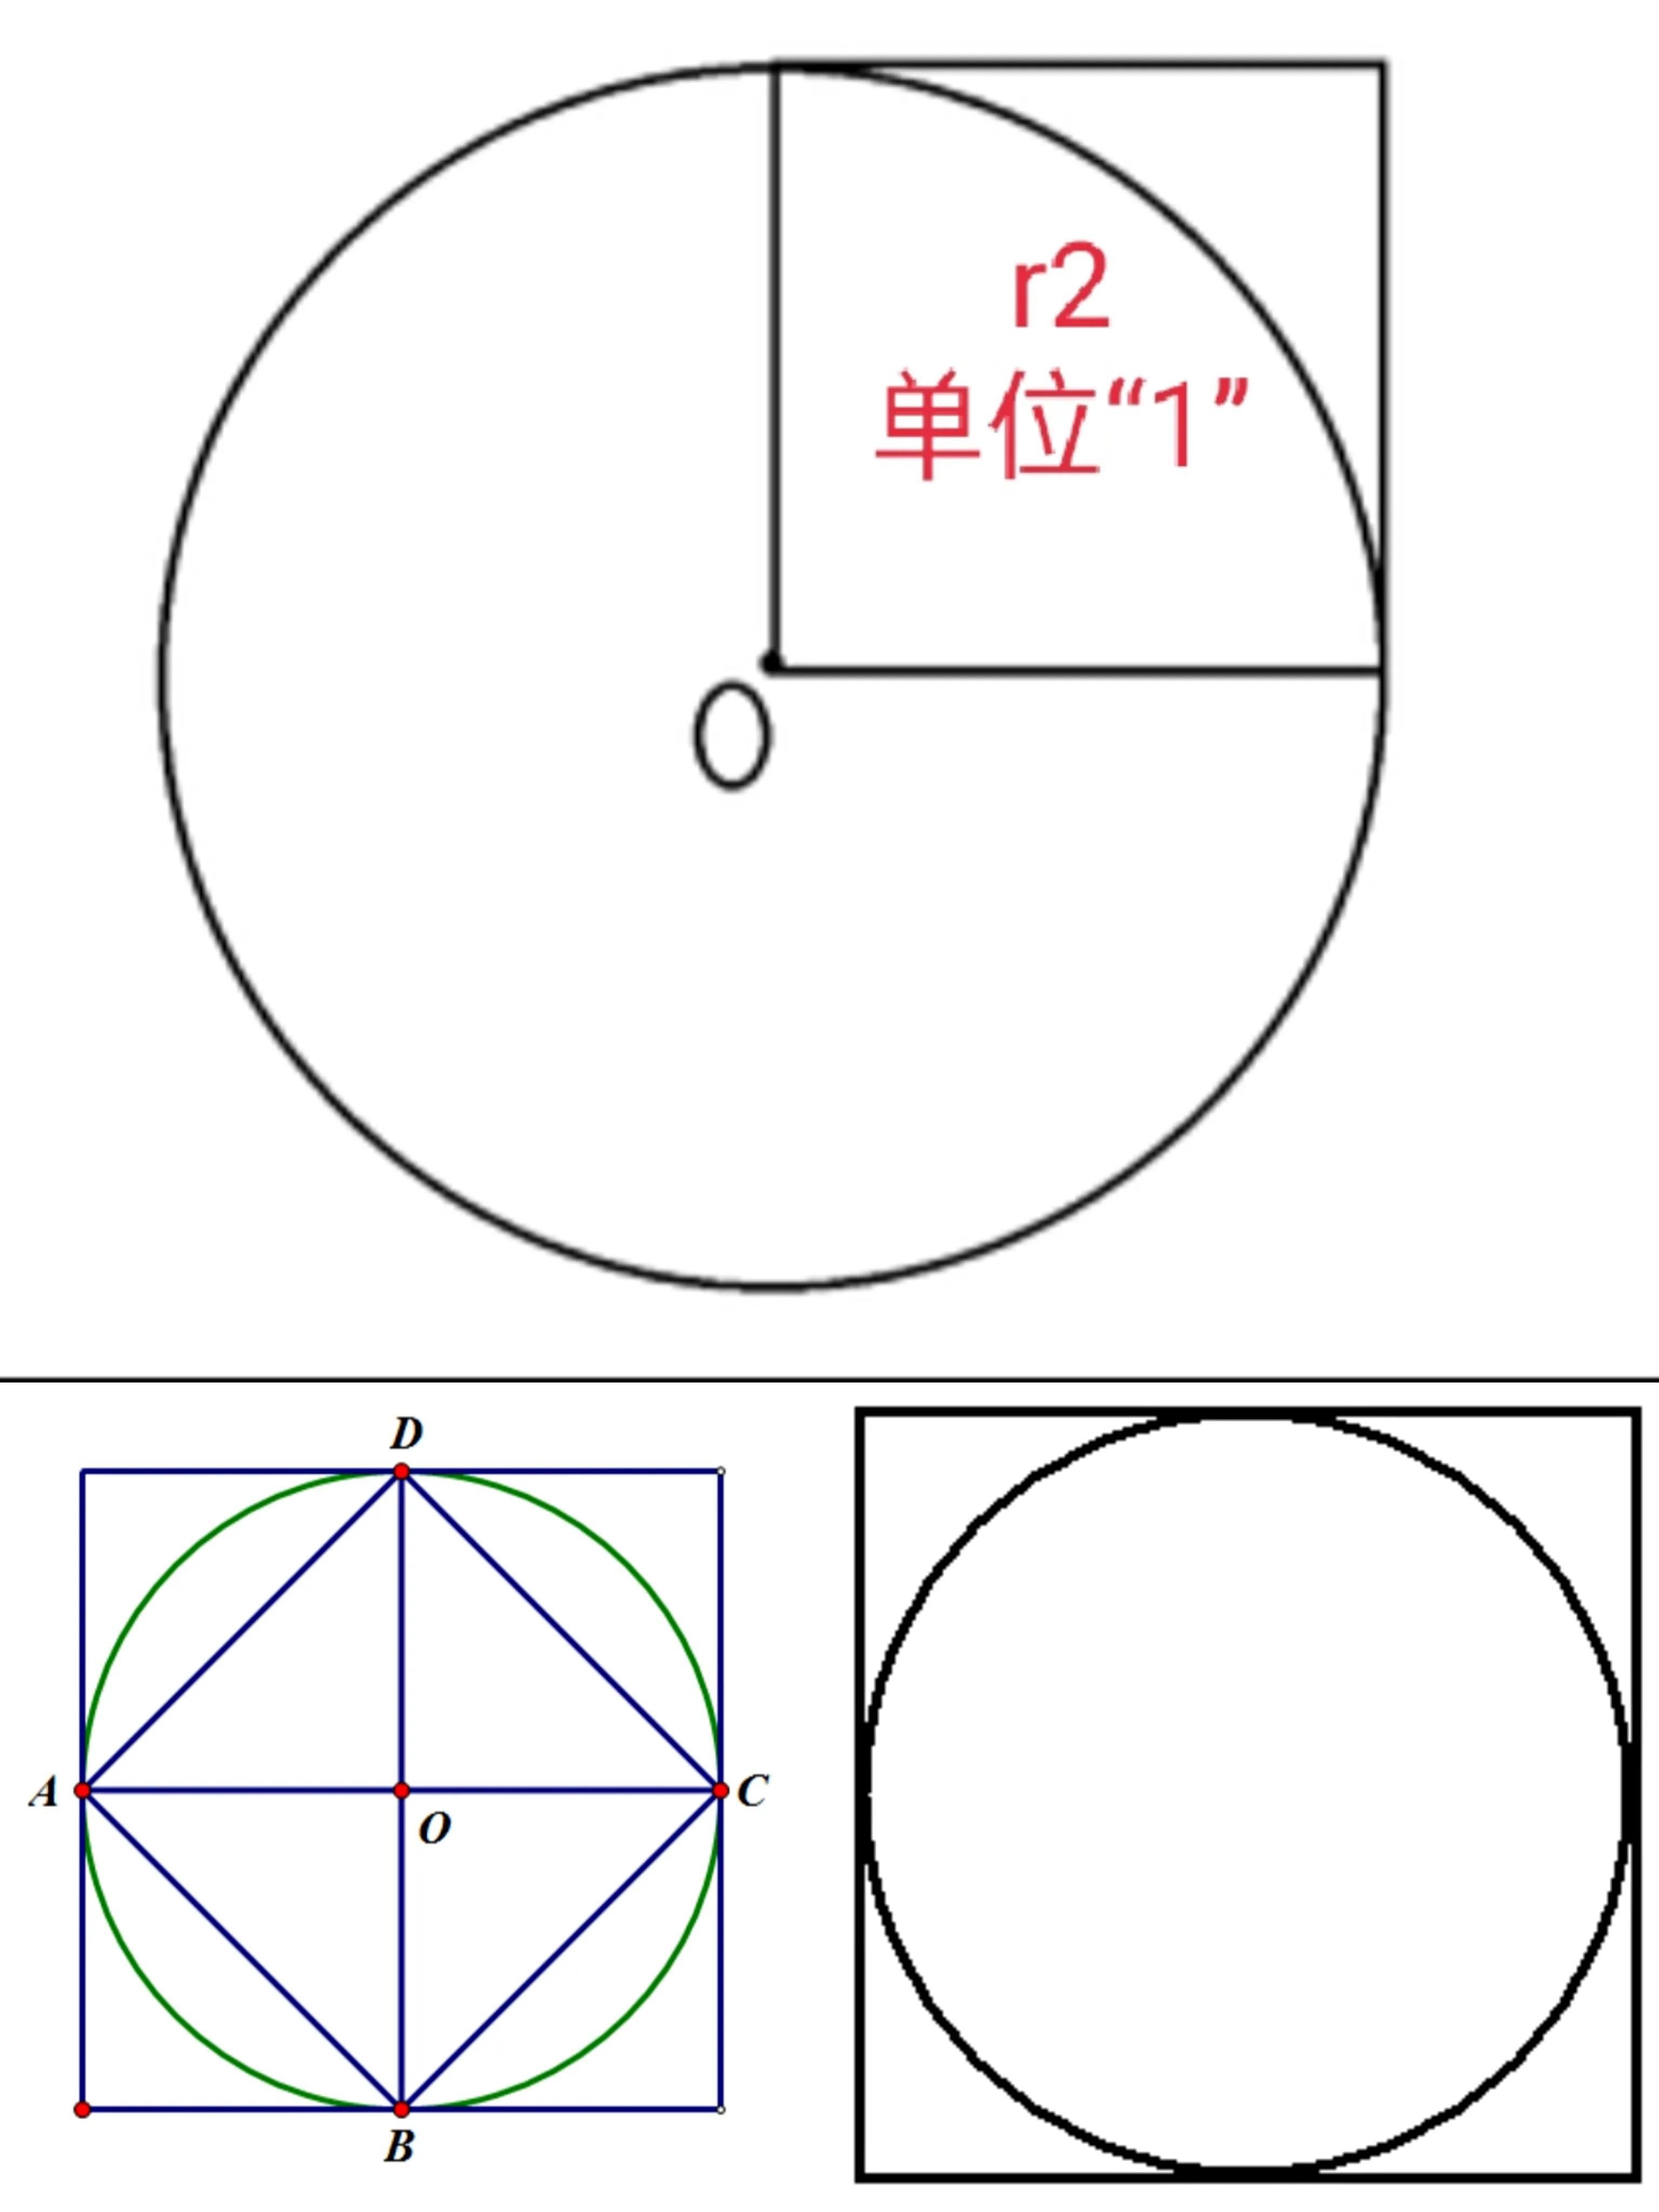 圆圈1是什么意思（在特定语境下，圆圈1代表什么内容或含义）